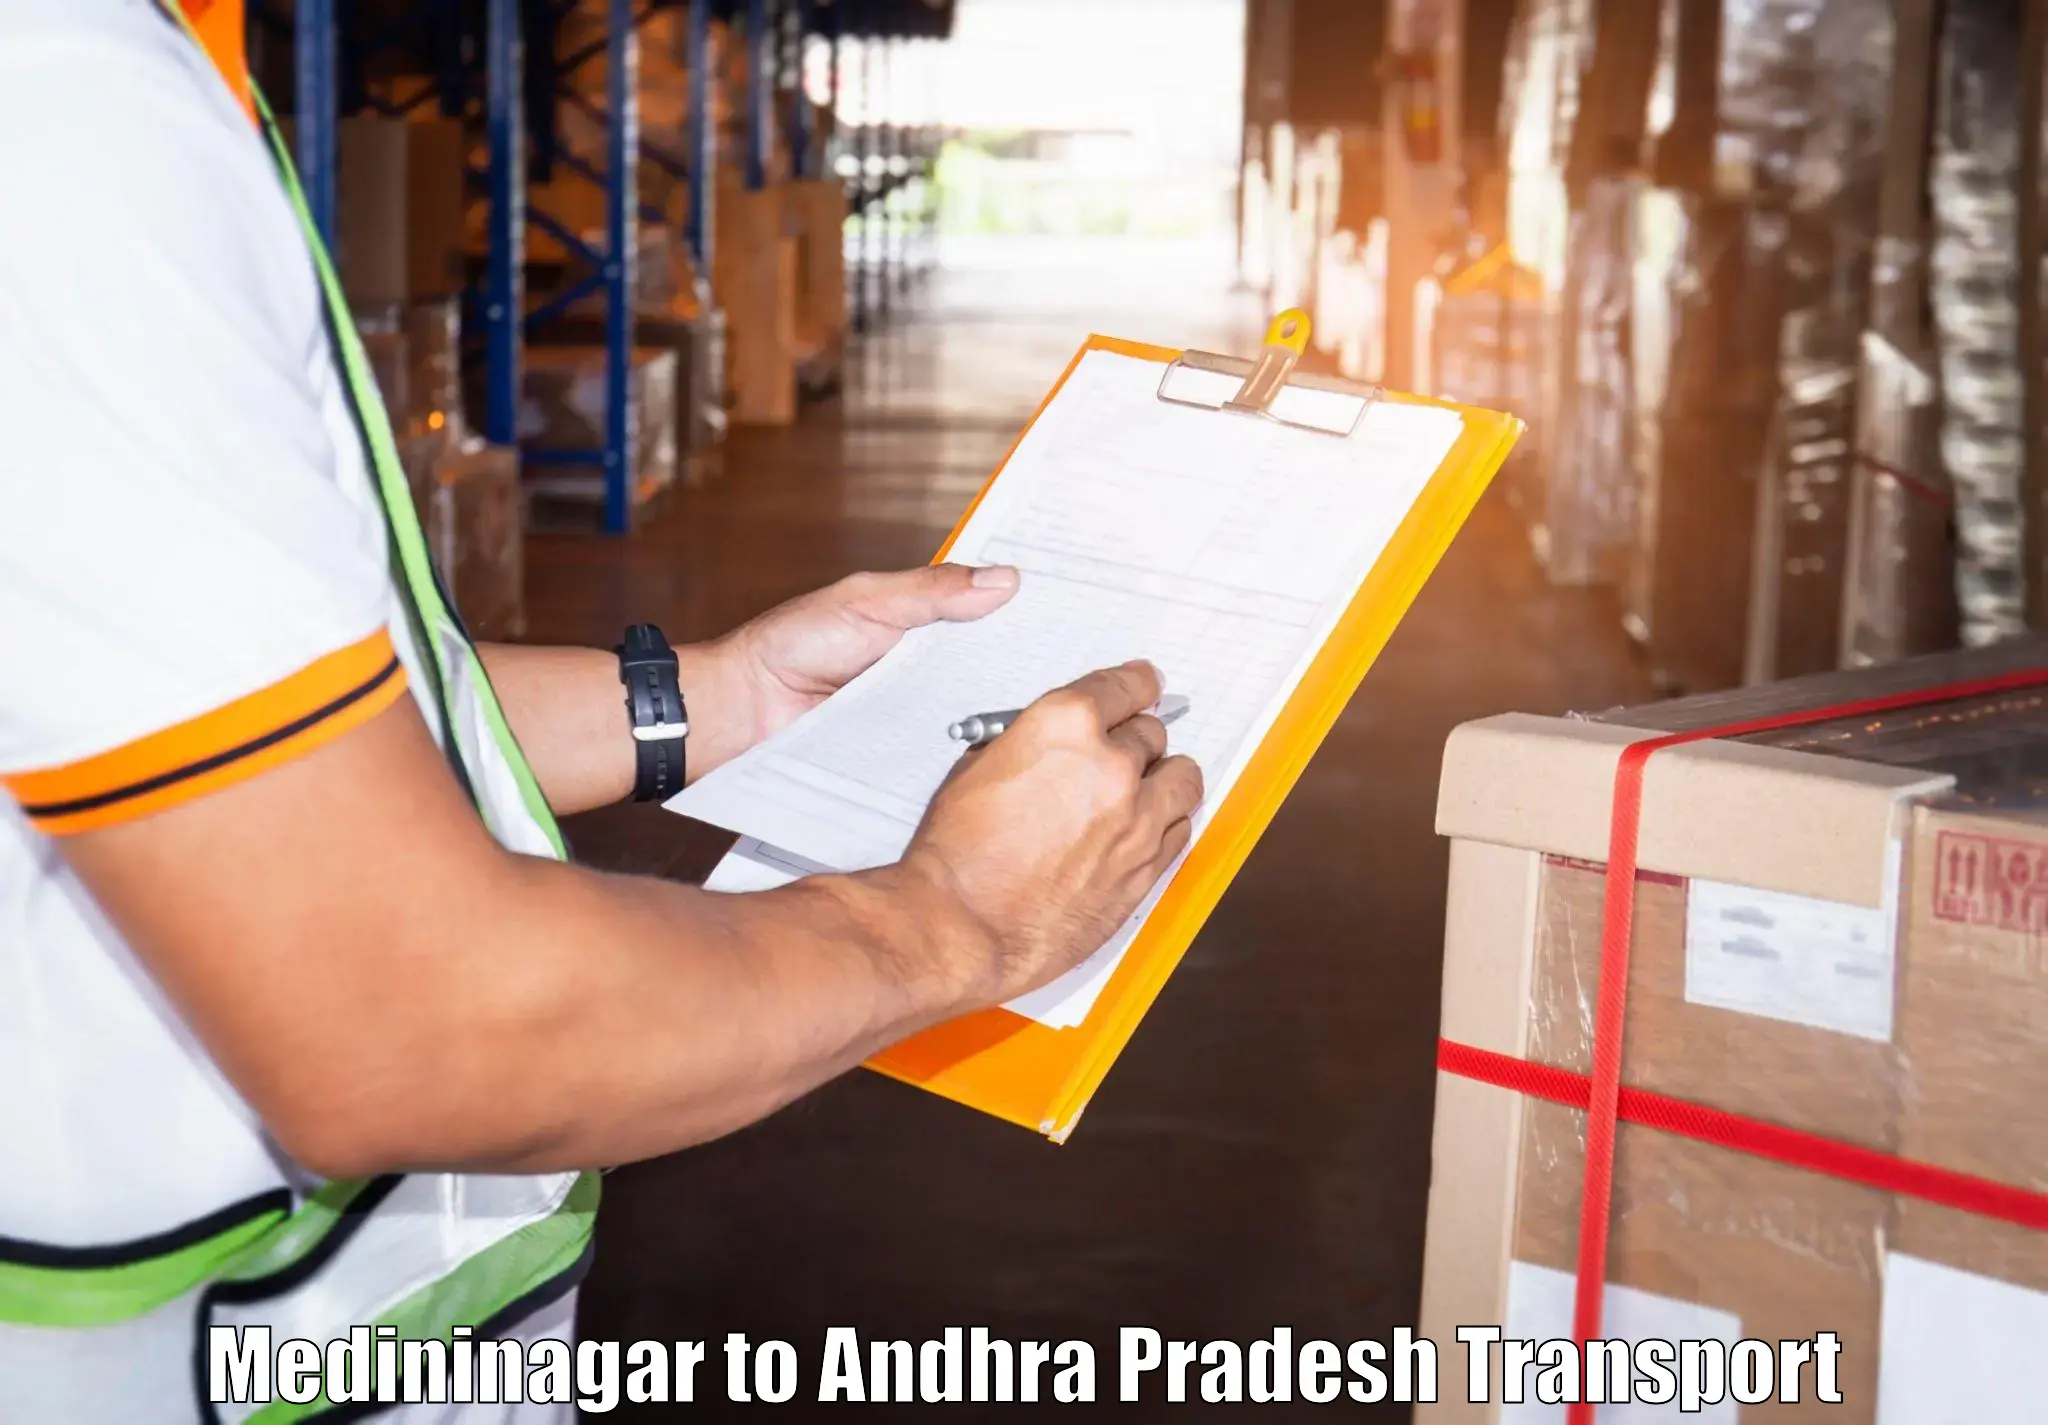 Truck transport companies in India Medininagar to Visakhapatnam Port